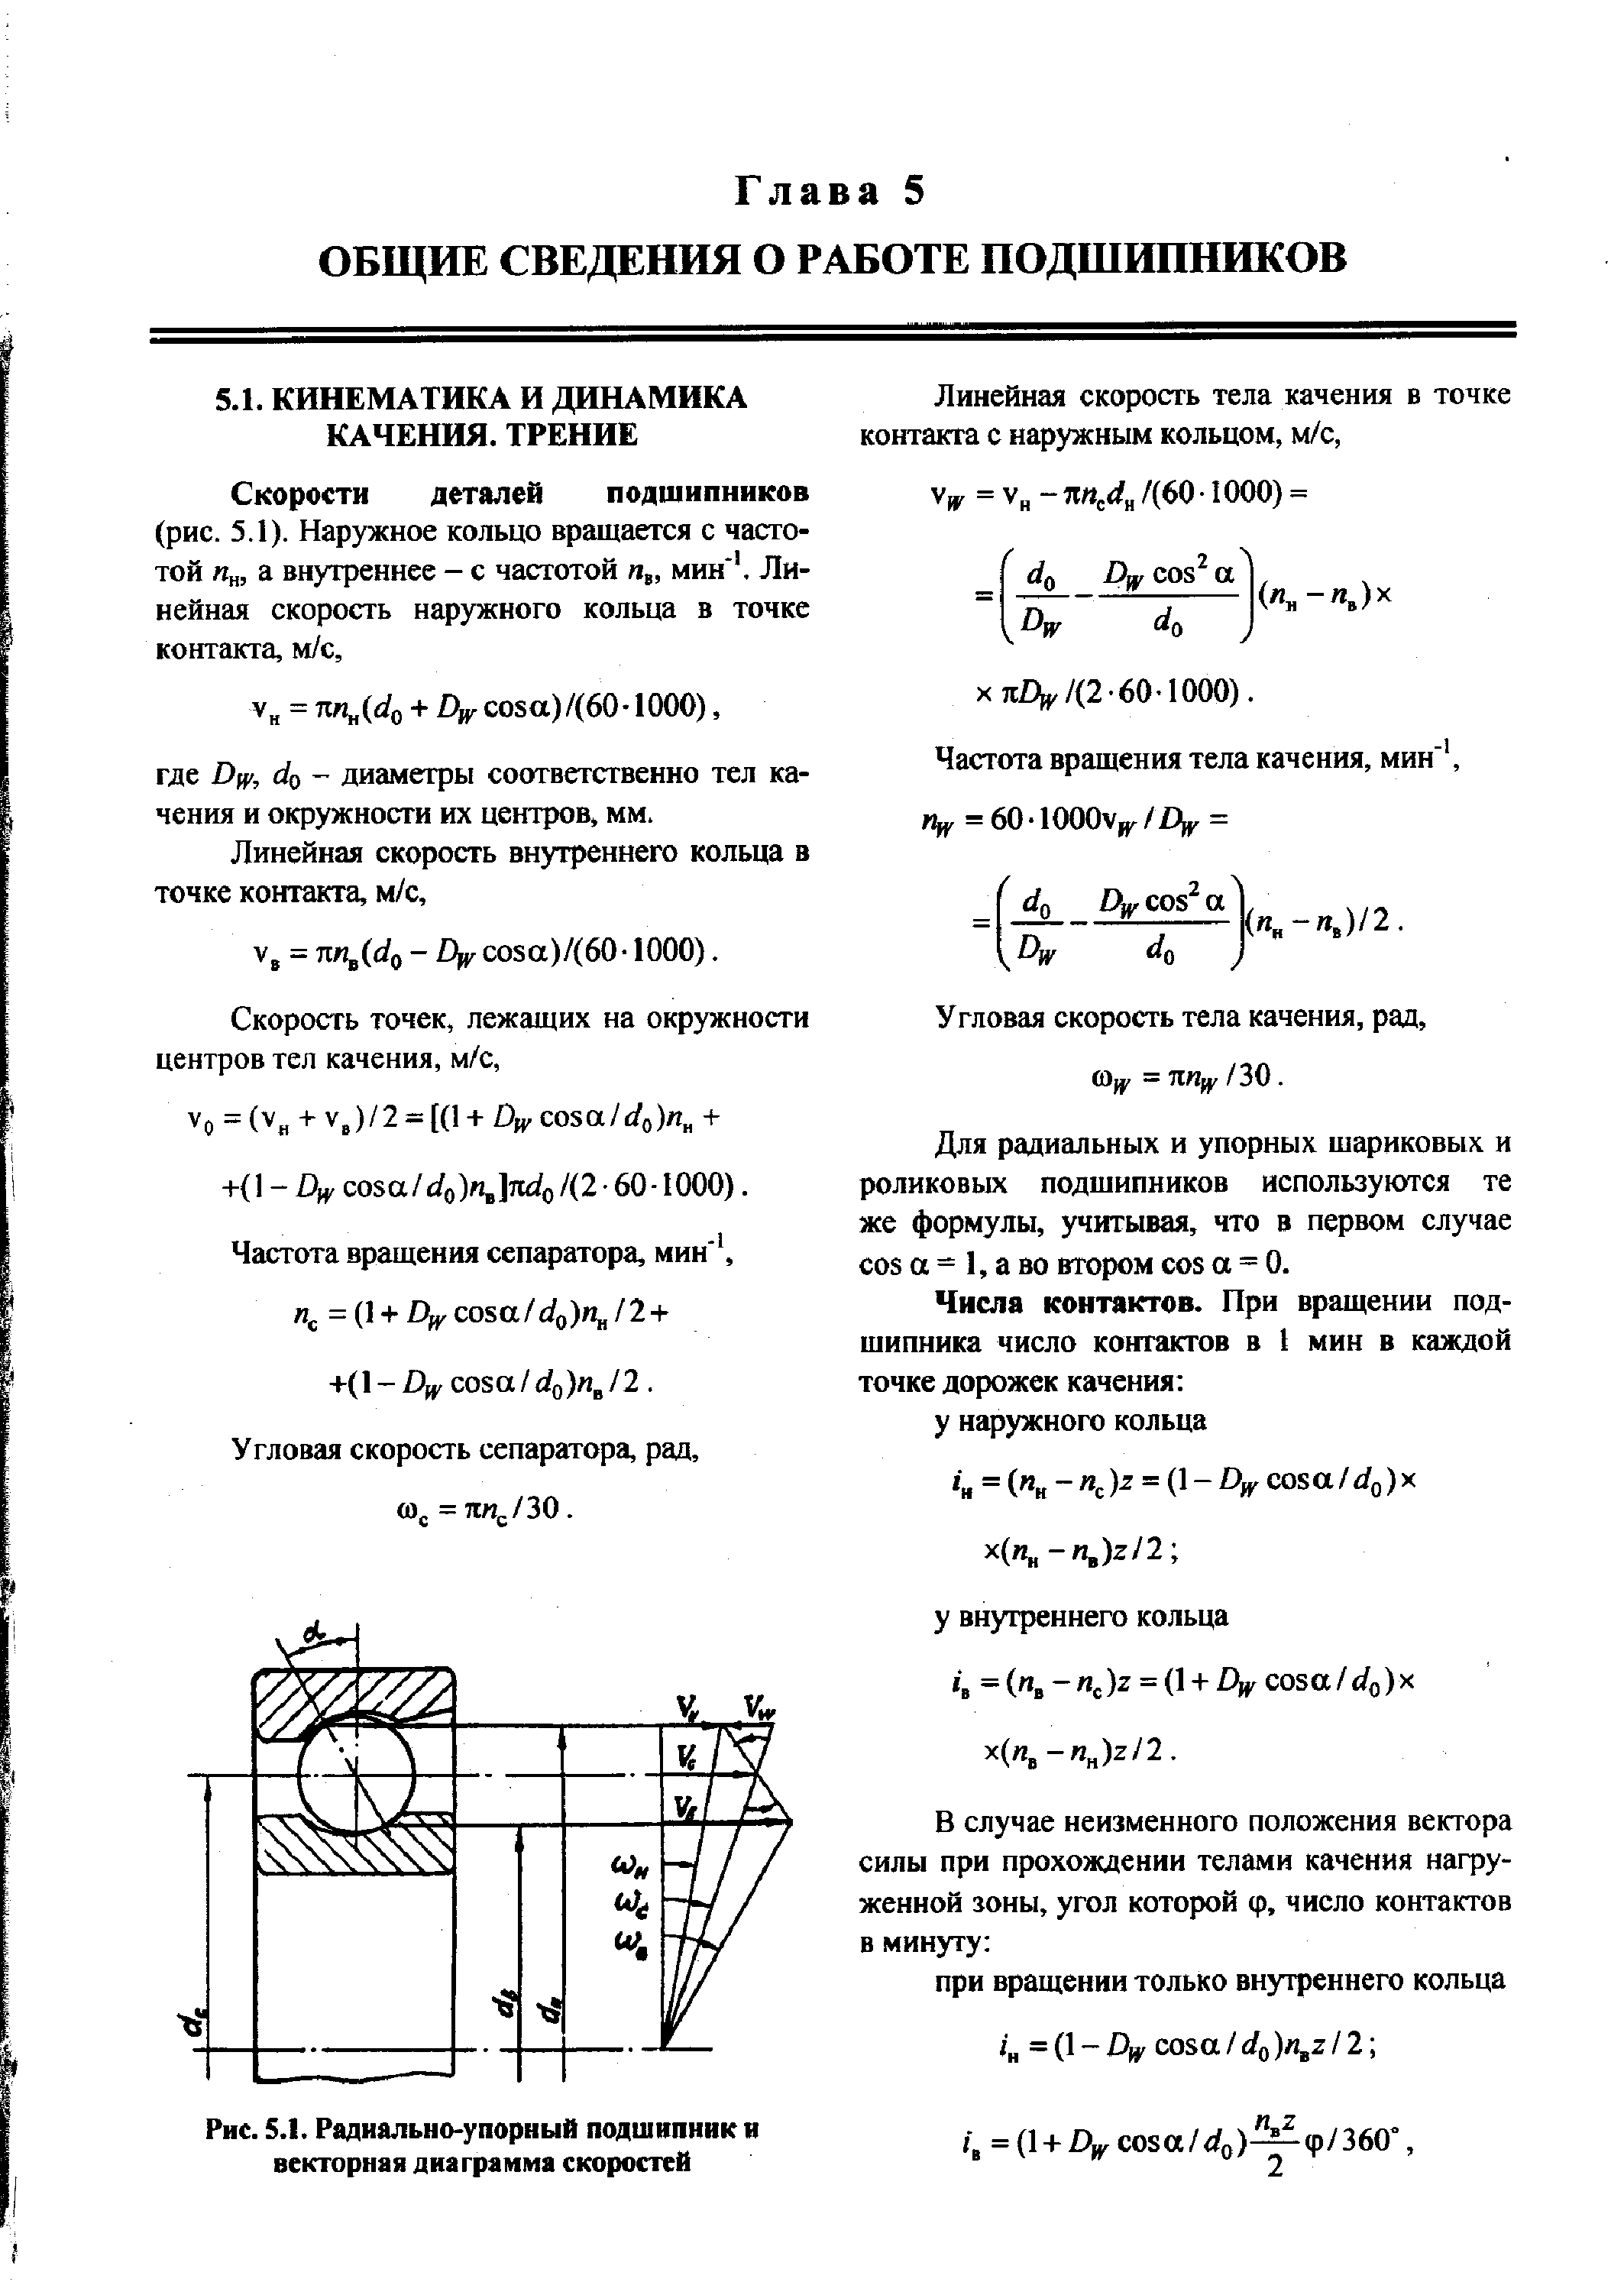 Для радиальных и упорных шариковых и роликовых подшипников используются те же формулы, учитывая, что в первом случае os а = 1, а во втором os а = 0.
